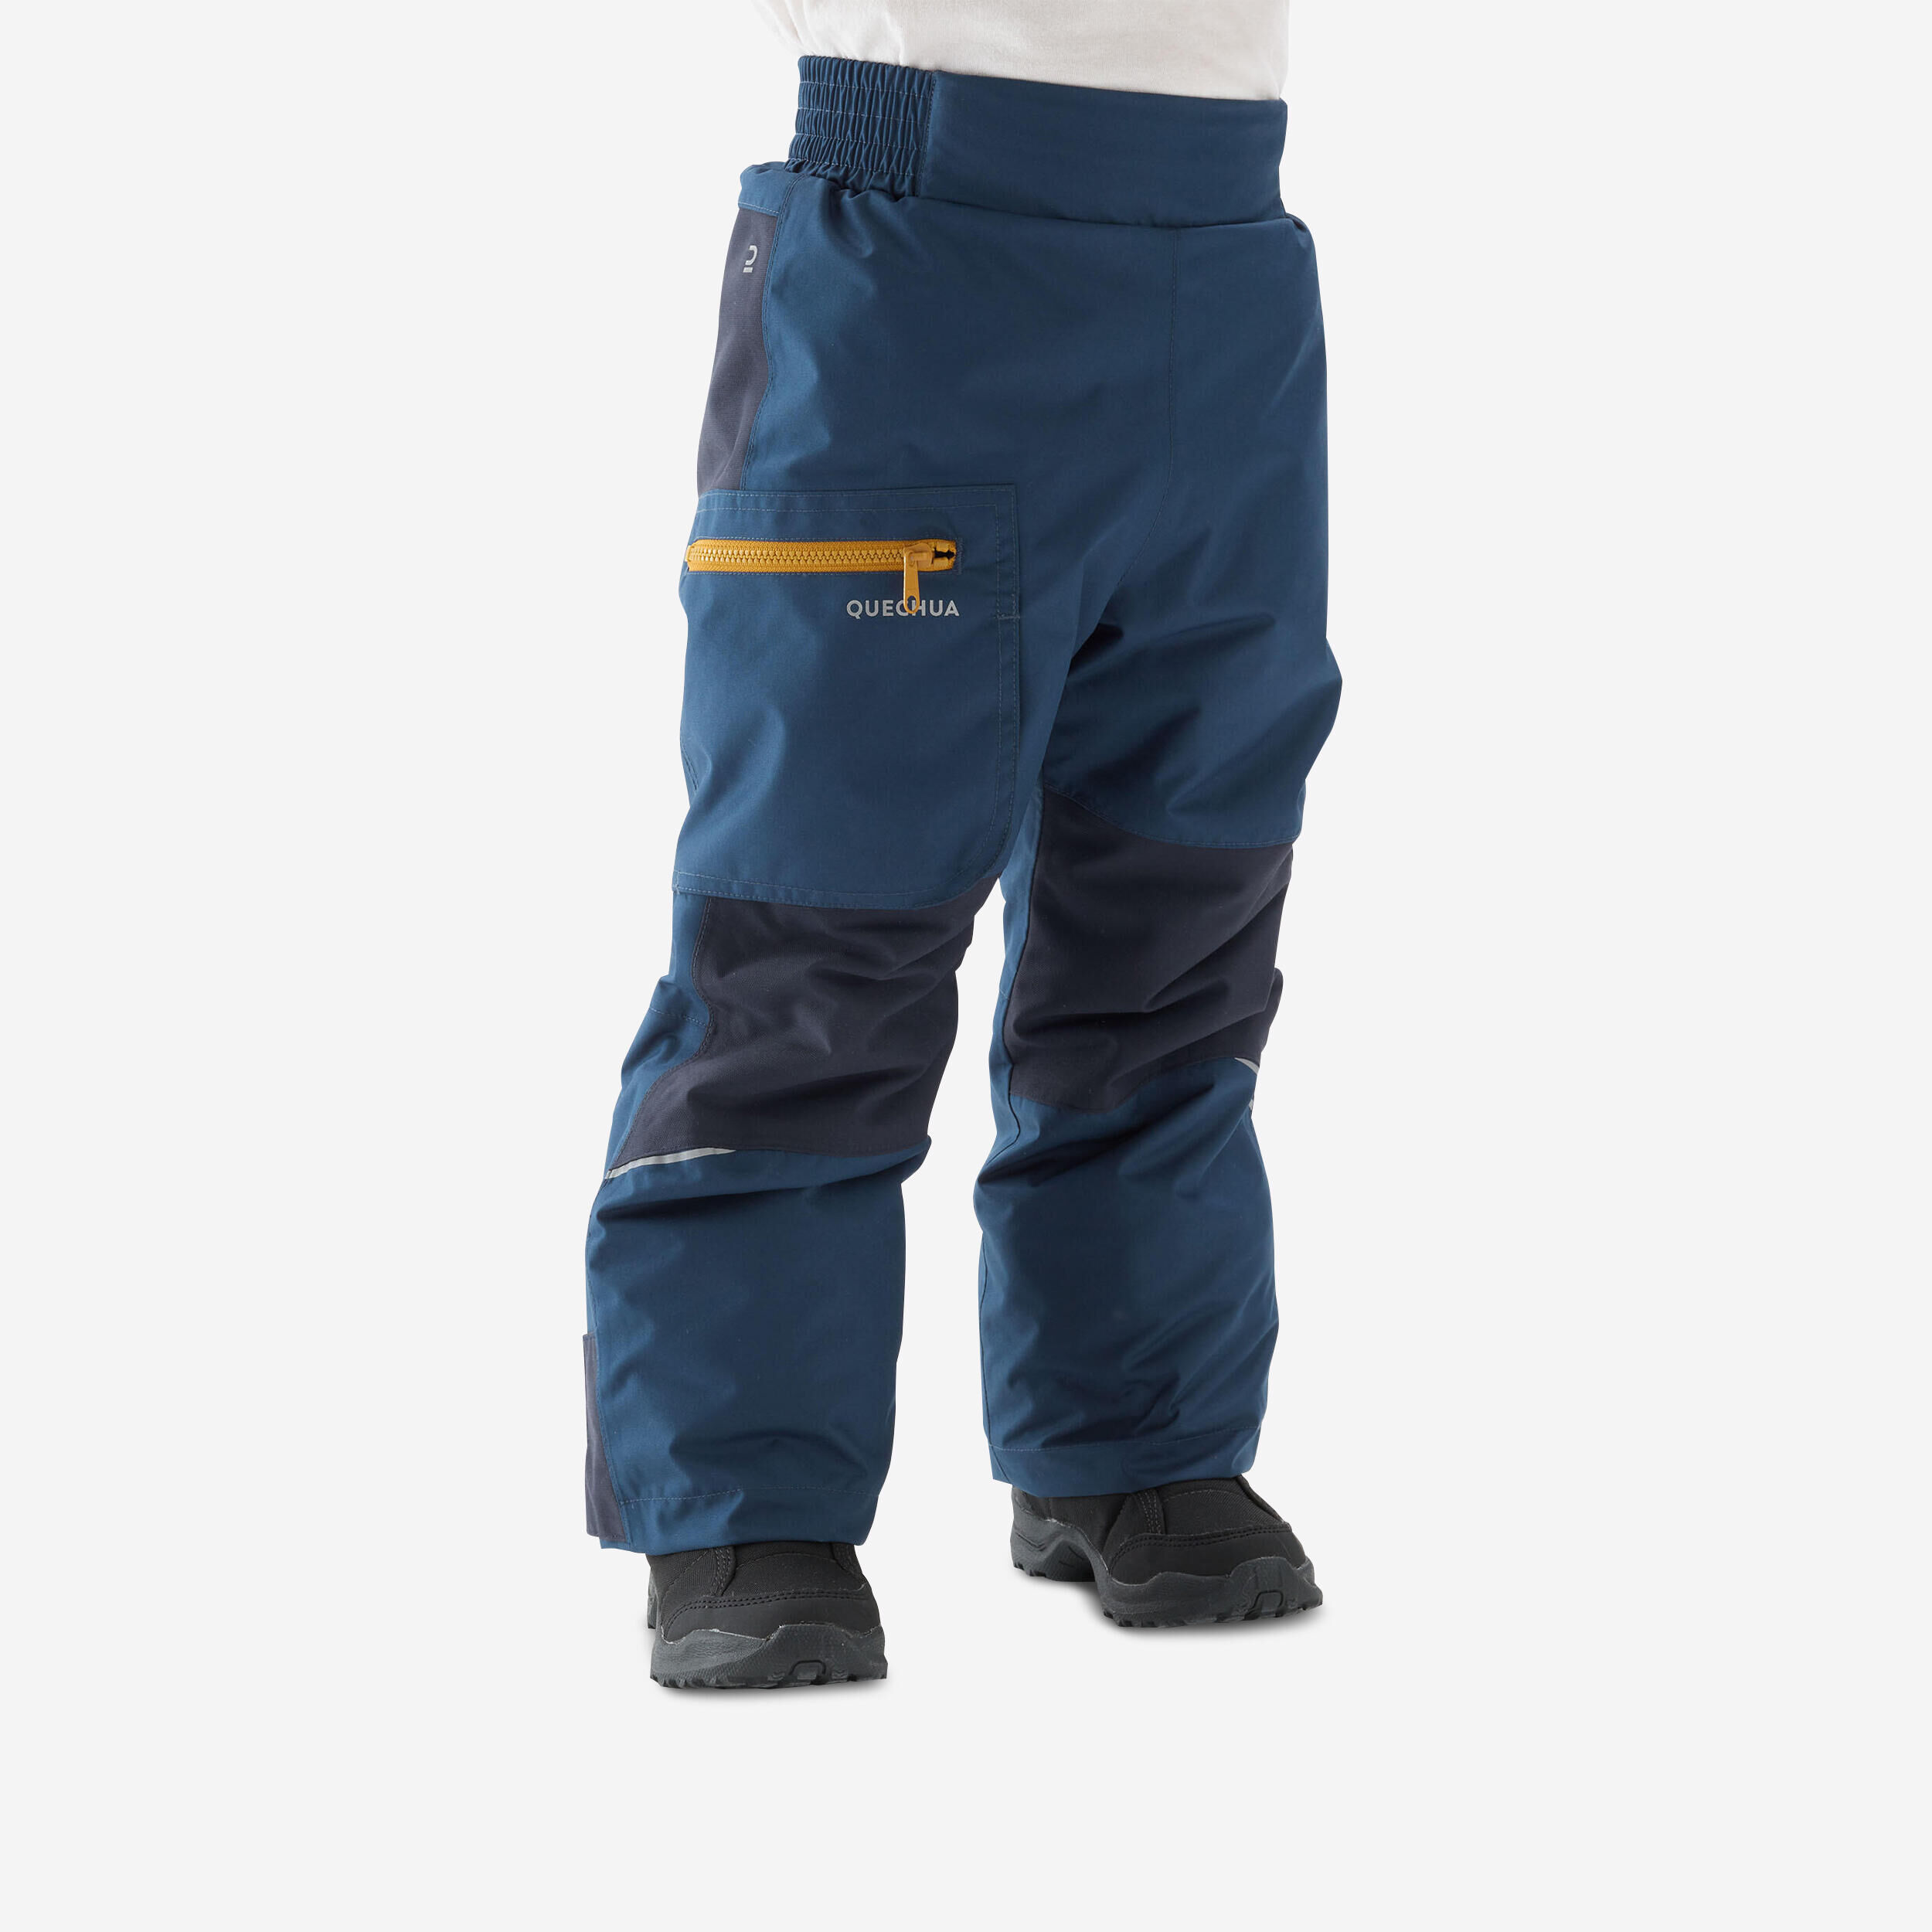 QUECHUA Kids’ Warm Waterproof Hiking Trousers - SH500 MOUNTAIN - Ages 2-6